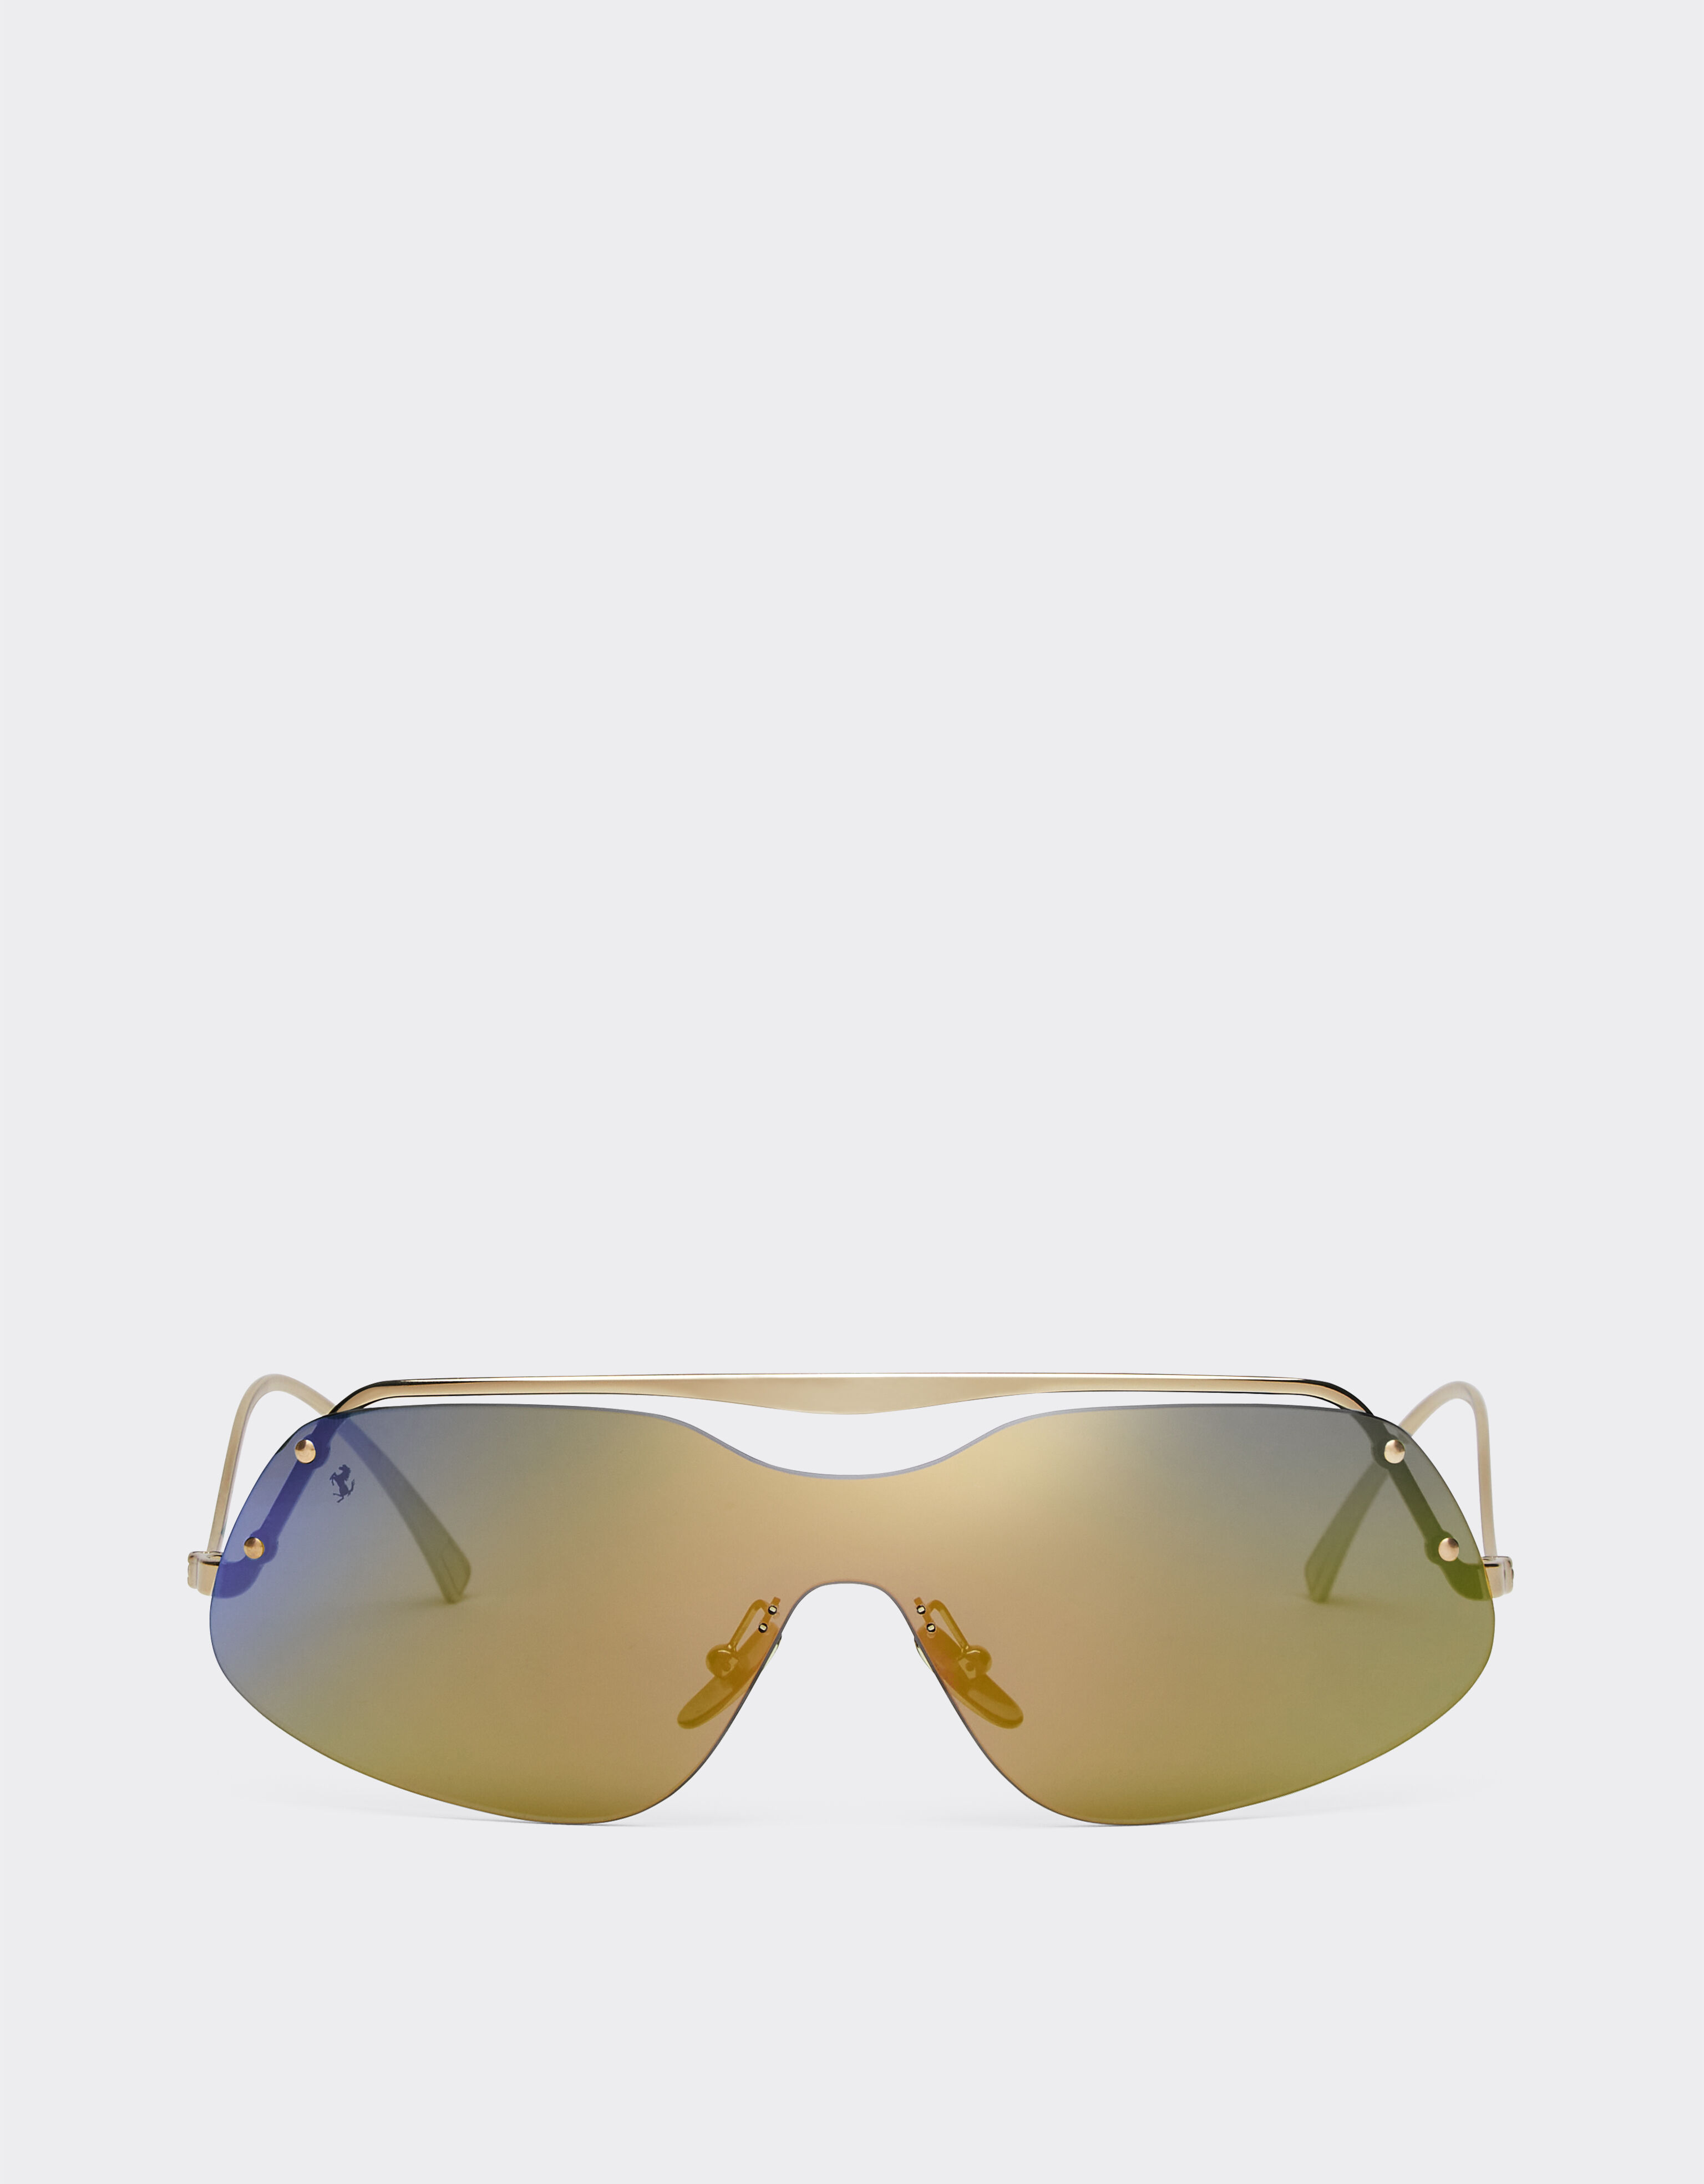 Ferrari Ferrari Sonnenbrille aus goldenem Metall mit gold-blau verspiegelten Gläsern Gold F1200f